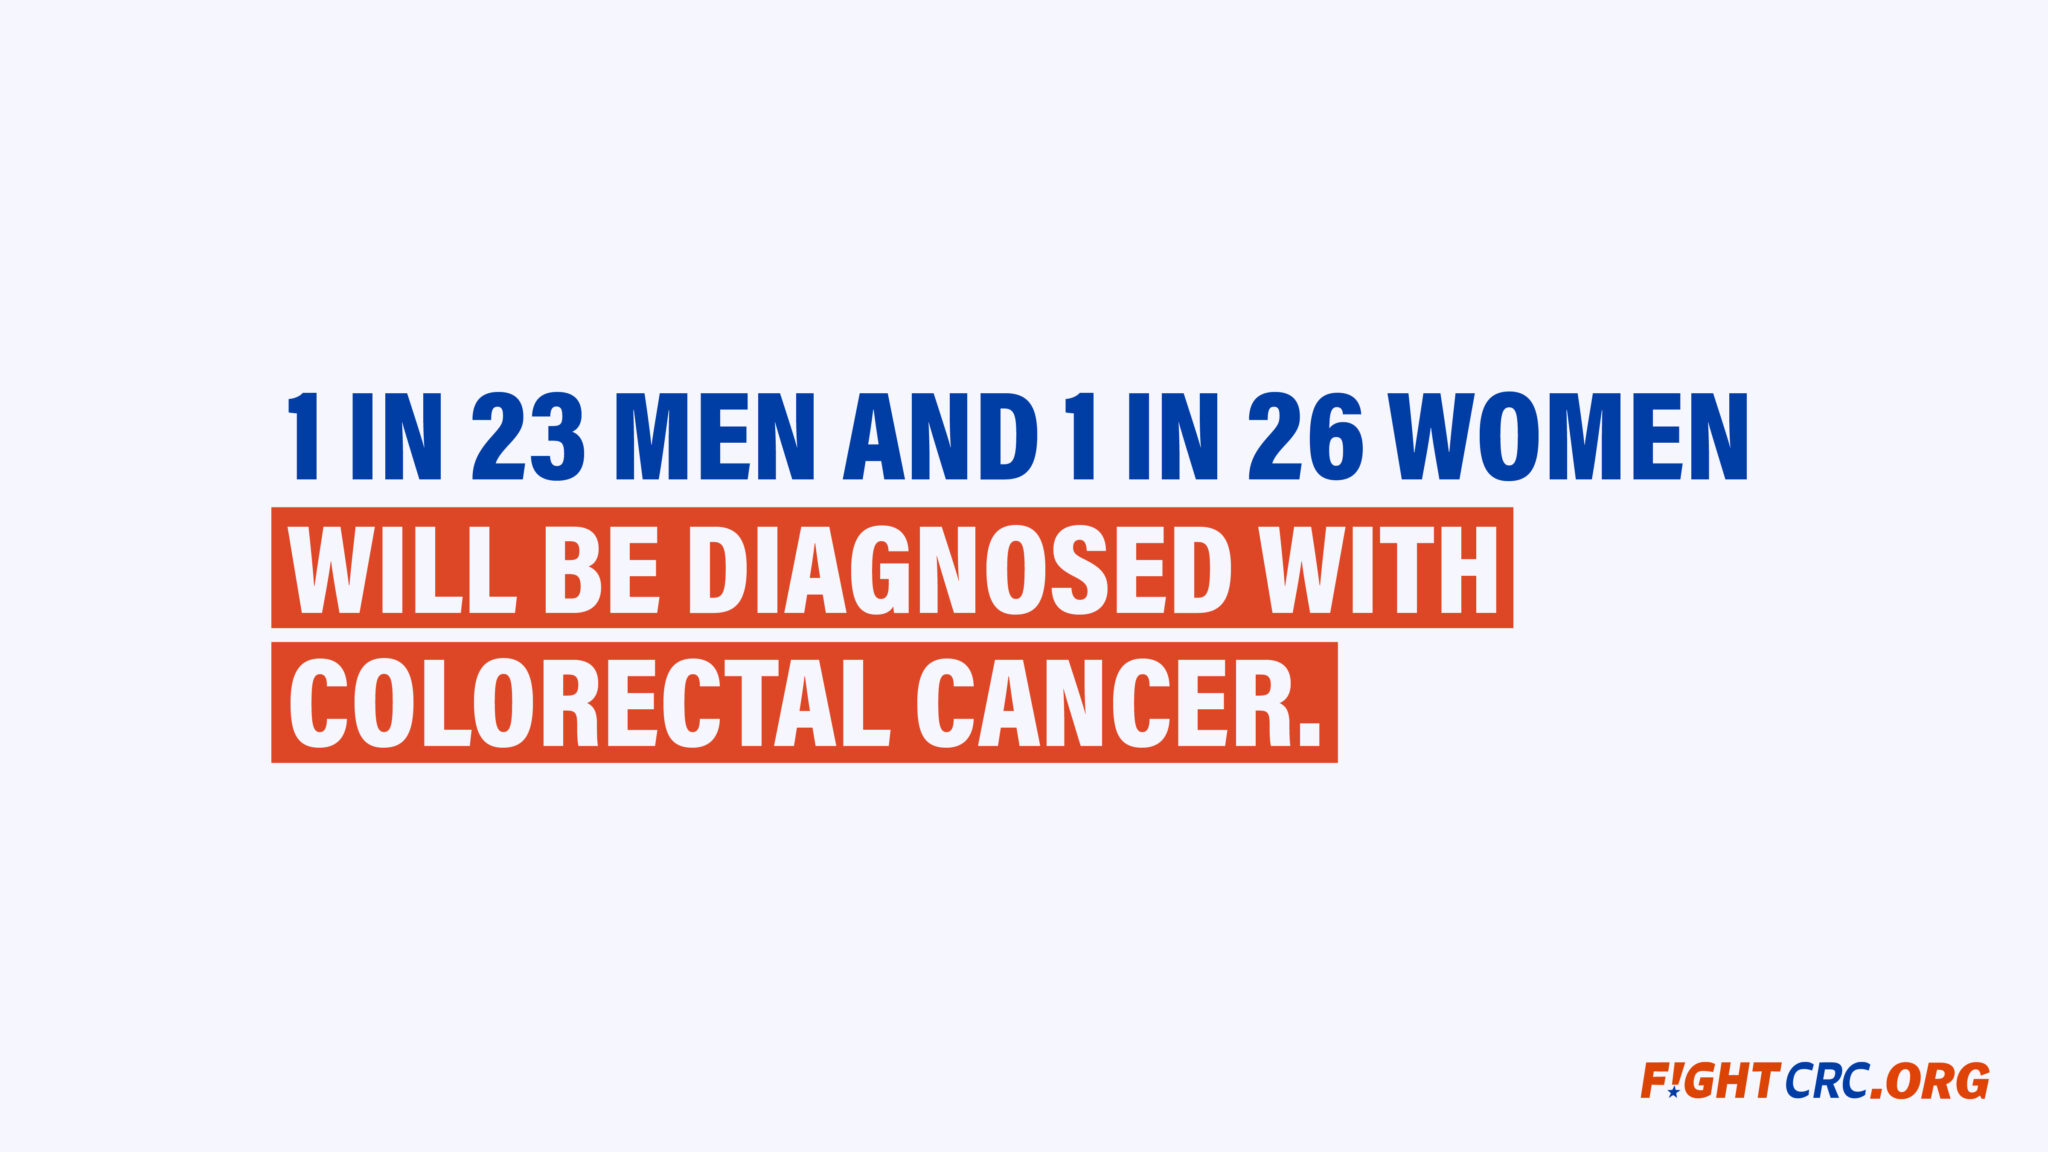 tasas de cáncer de colon Se diagnosticará a 1 de cada 23 hombres y a 1 de cada 26 mujeres